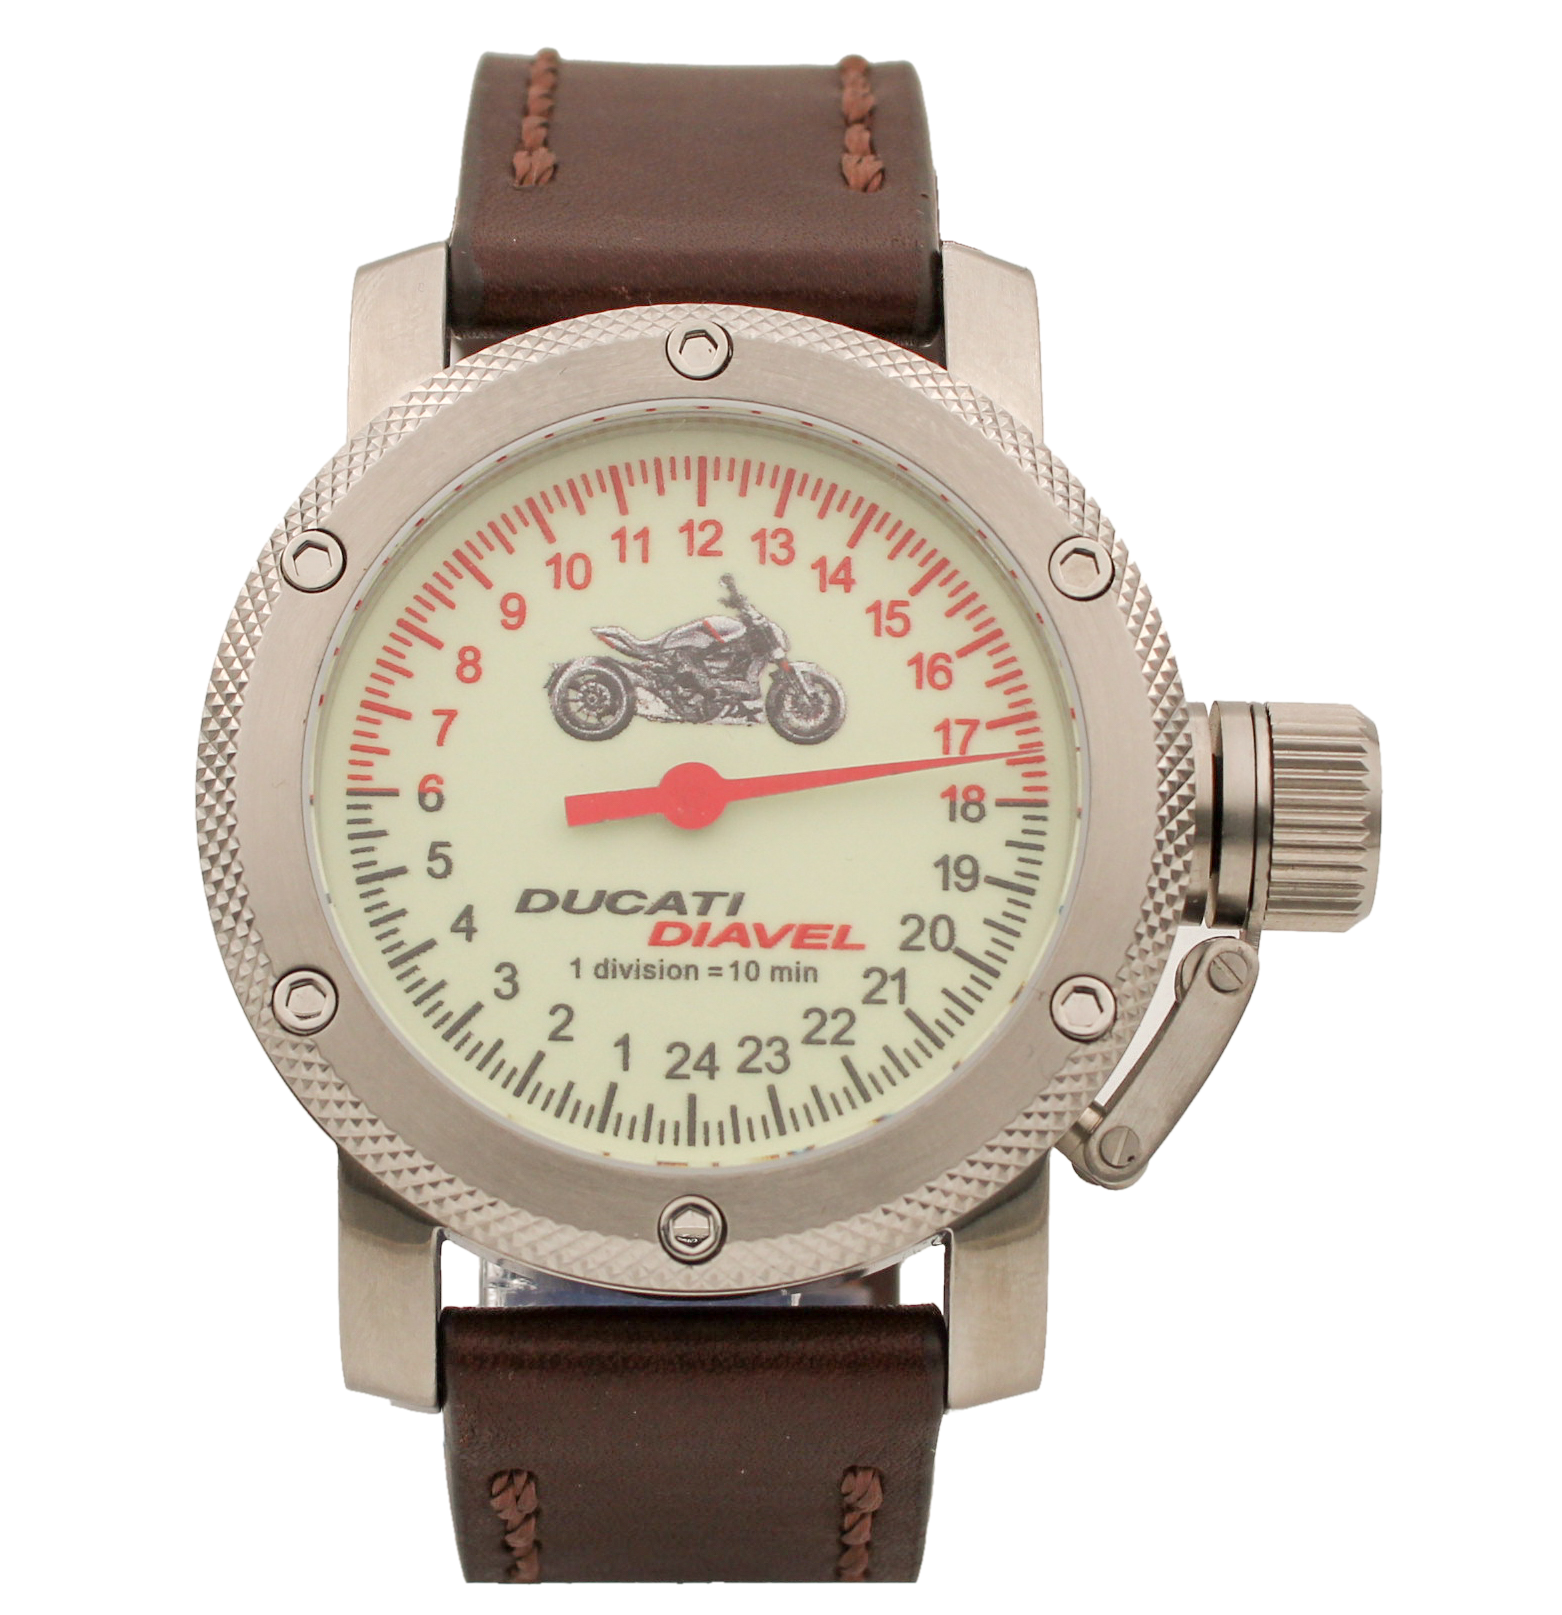 Наручные часы мужские Watch Triumph Ducati Diavel коричневые